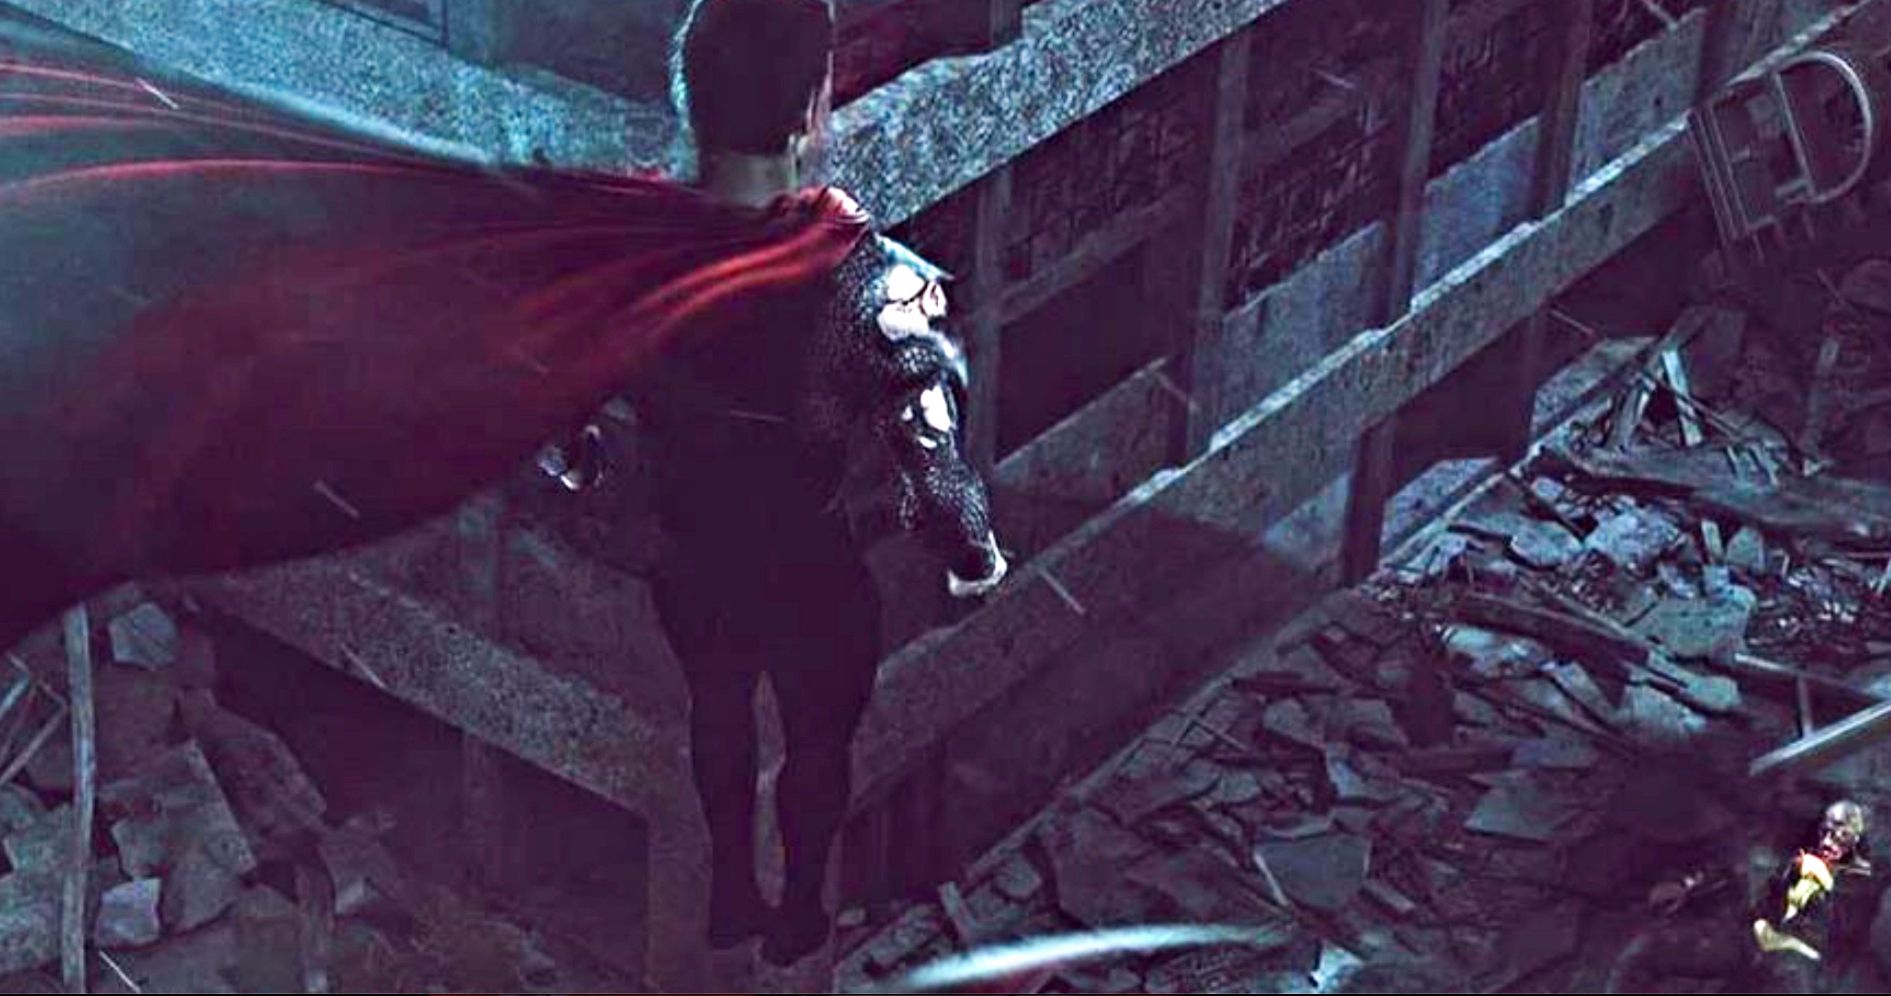 Henry Cavill's Superman Meets Dwayne Johnson's Black Adam In Fan Art